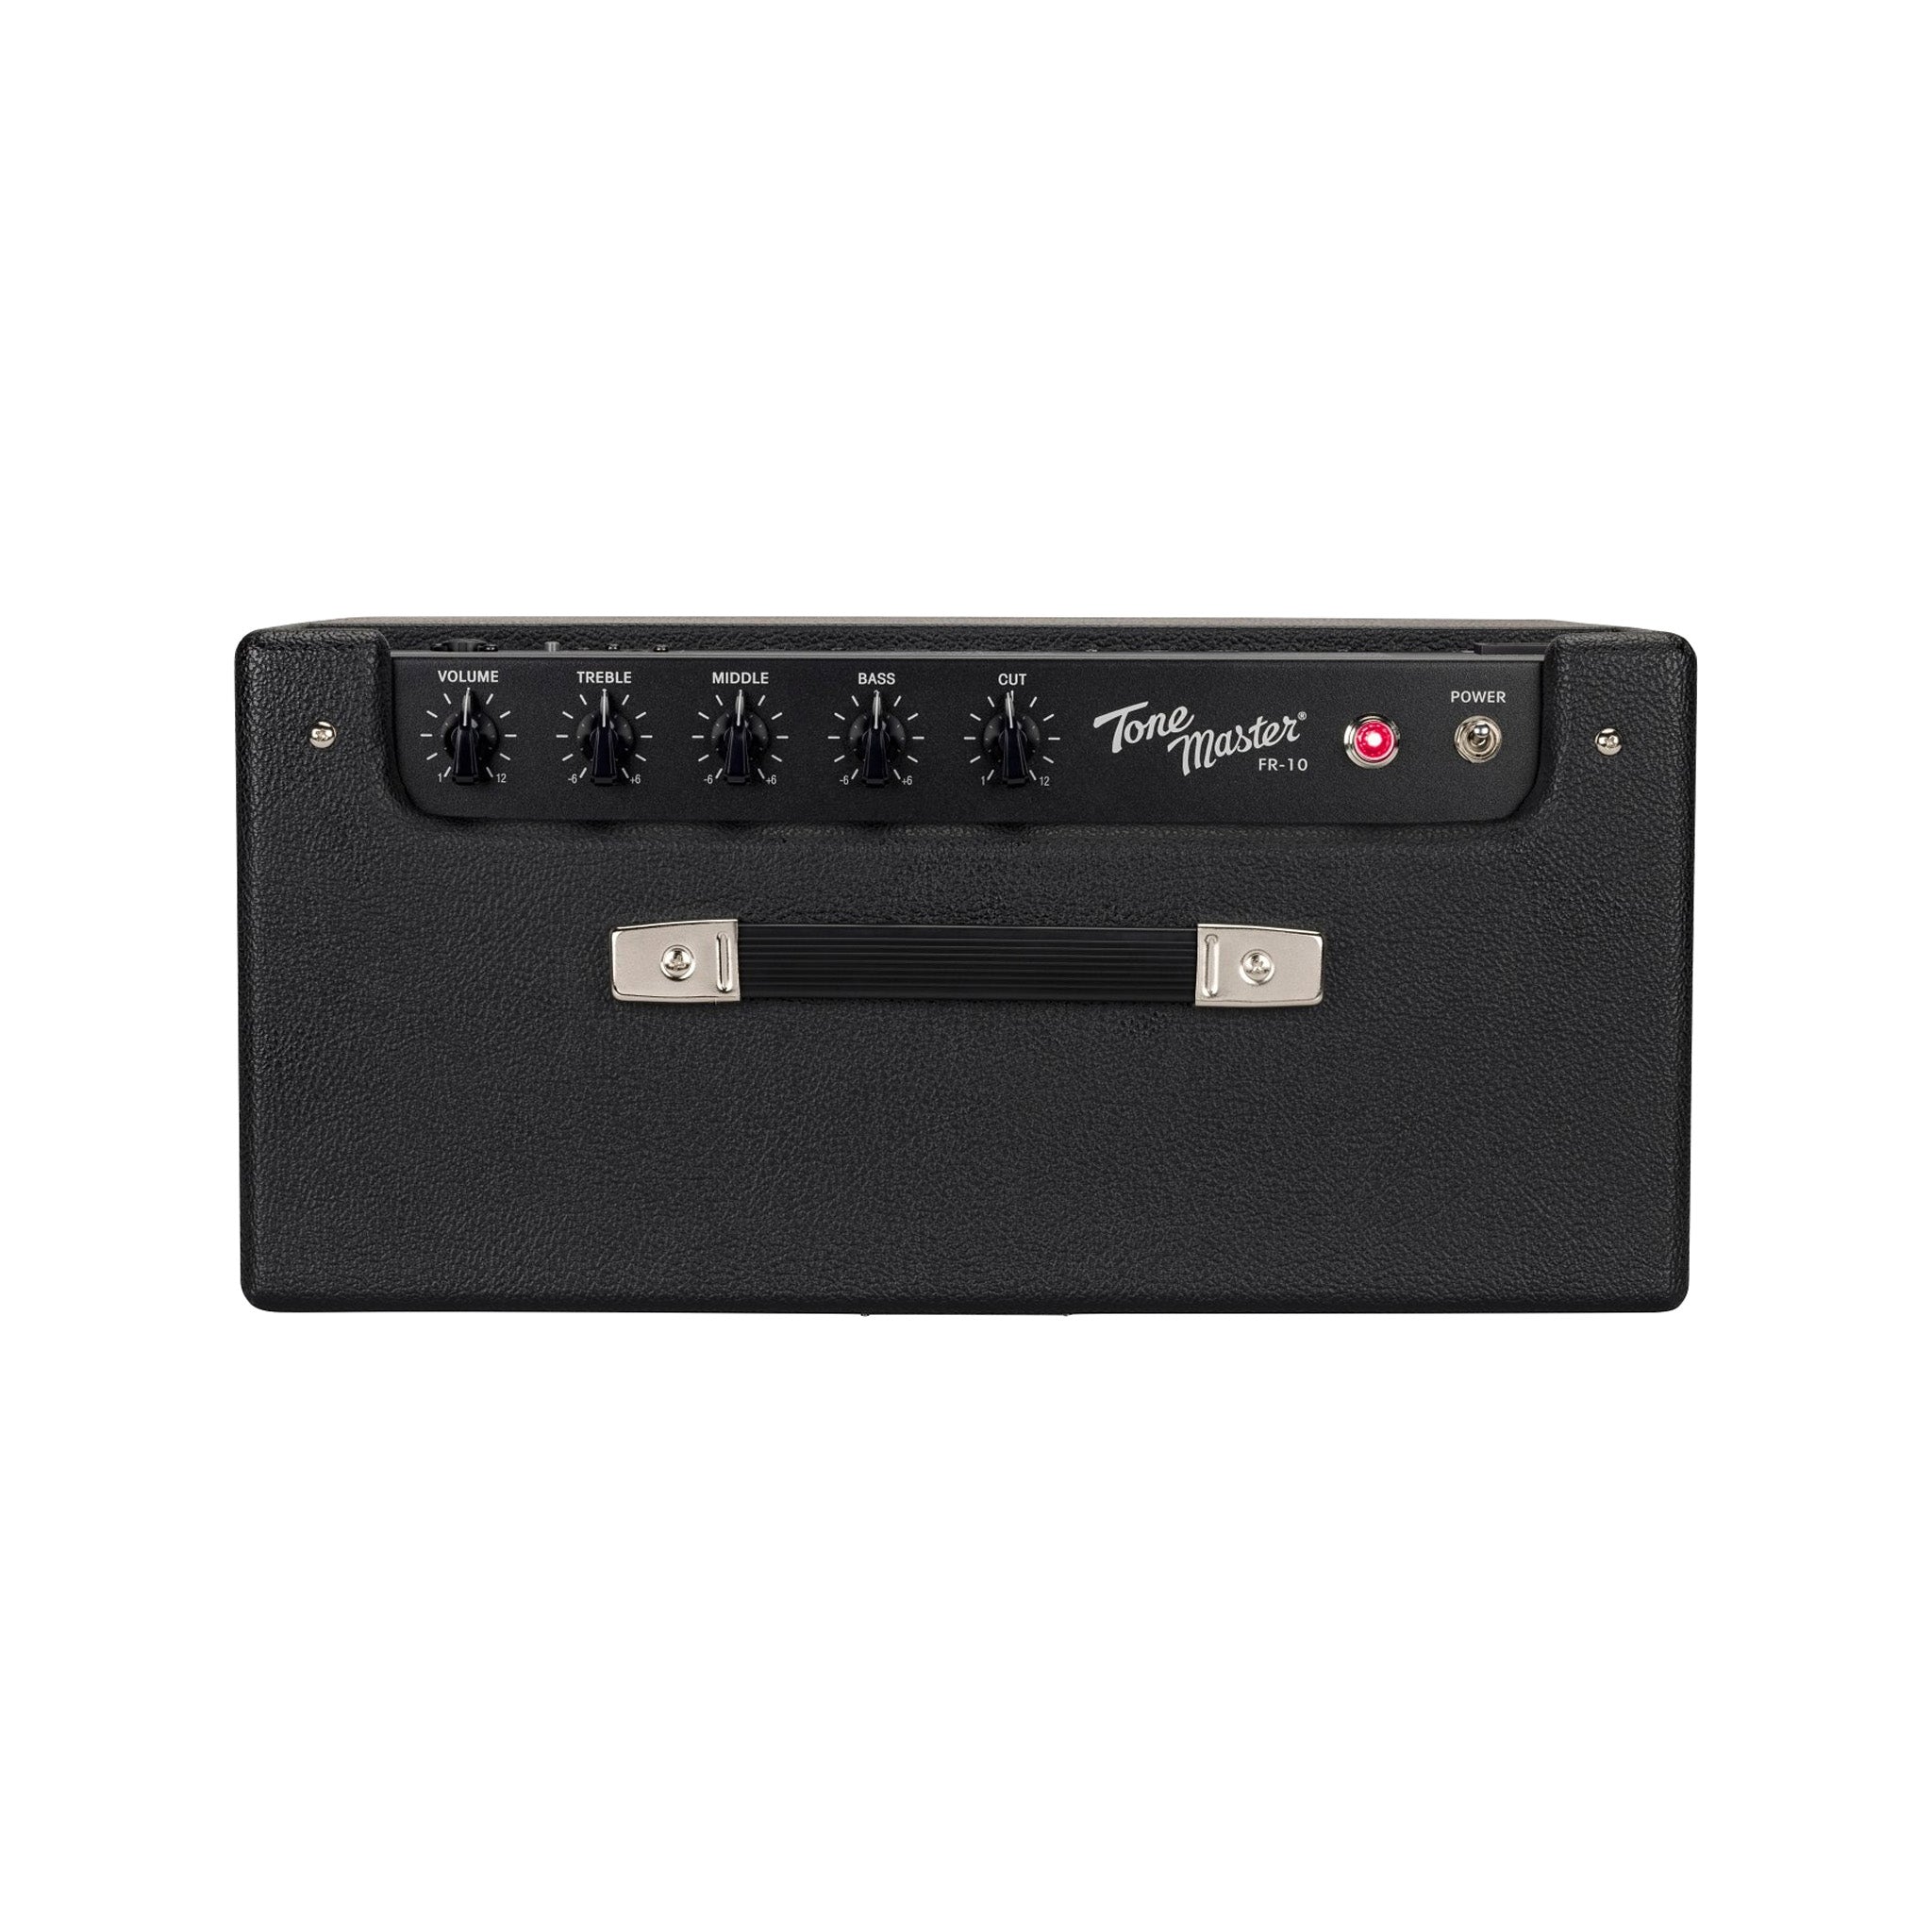 Fender Tone Master FR-10 Guitar Amplifier, 120V, Black